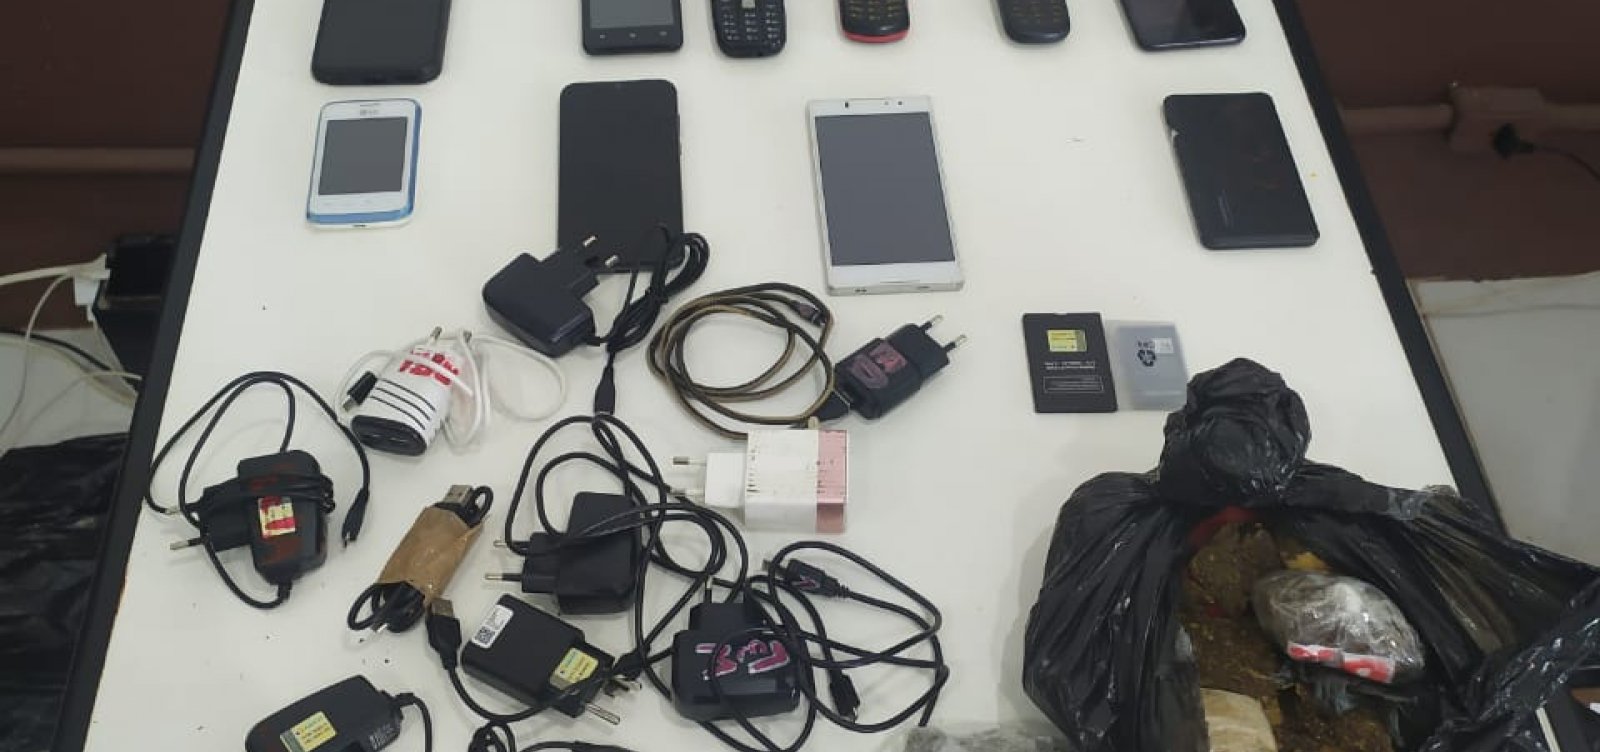 Polícia intercepta celulares que seriam entregues em presídio 